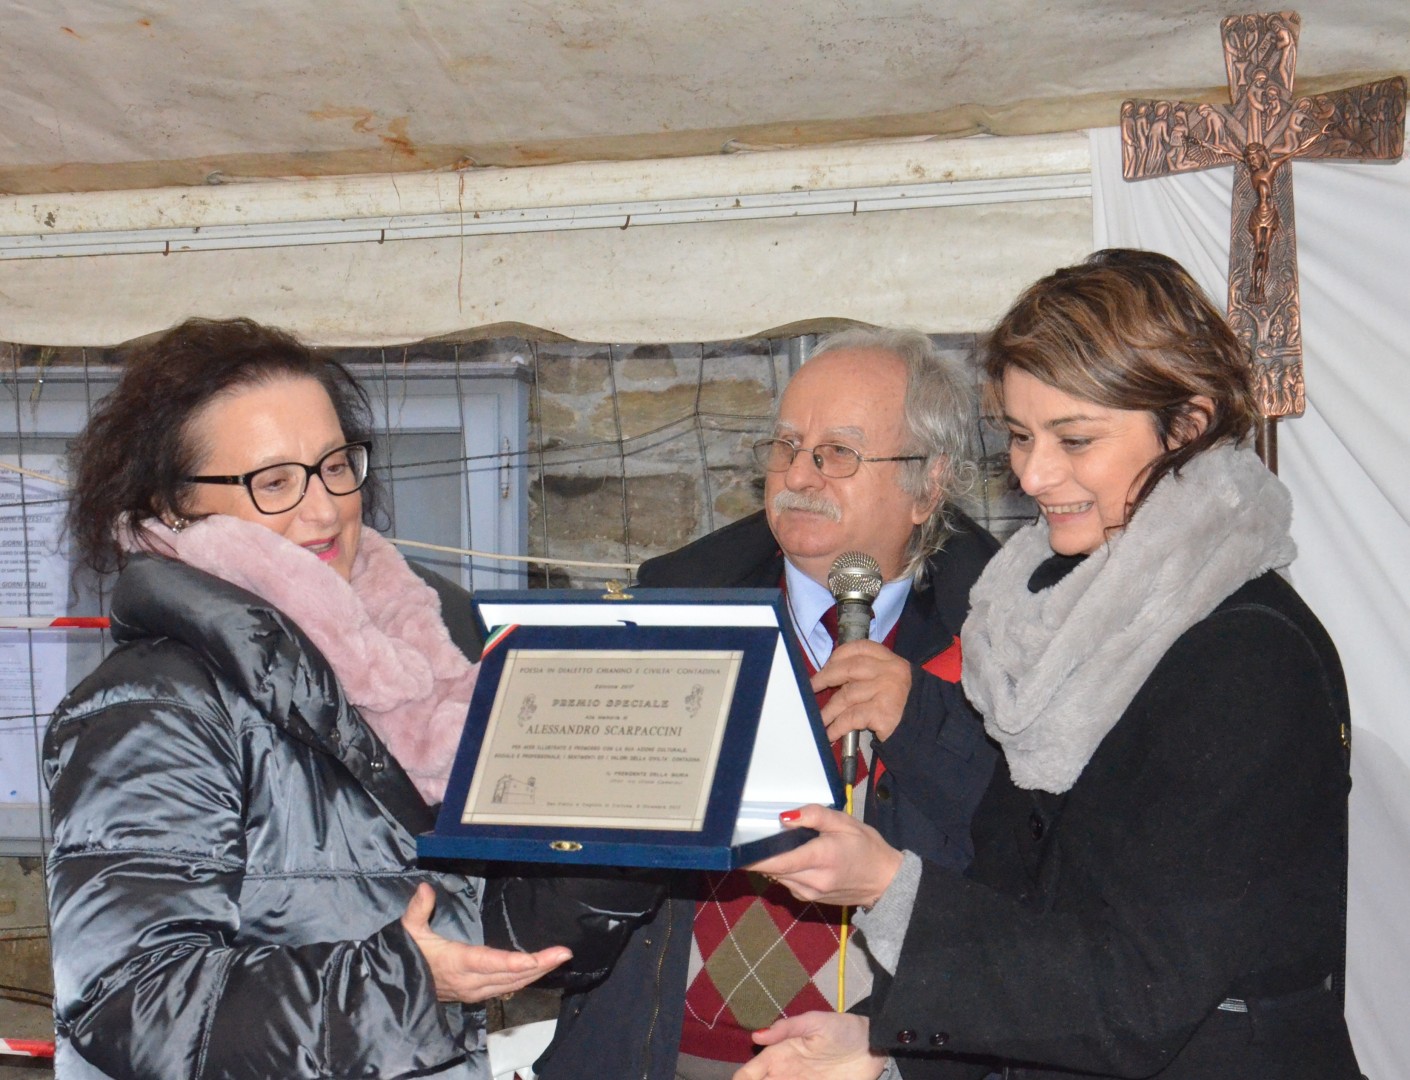 Consegnato il Premio Speciale Civiltà Contadina a Francesca Basanieri